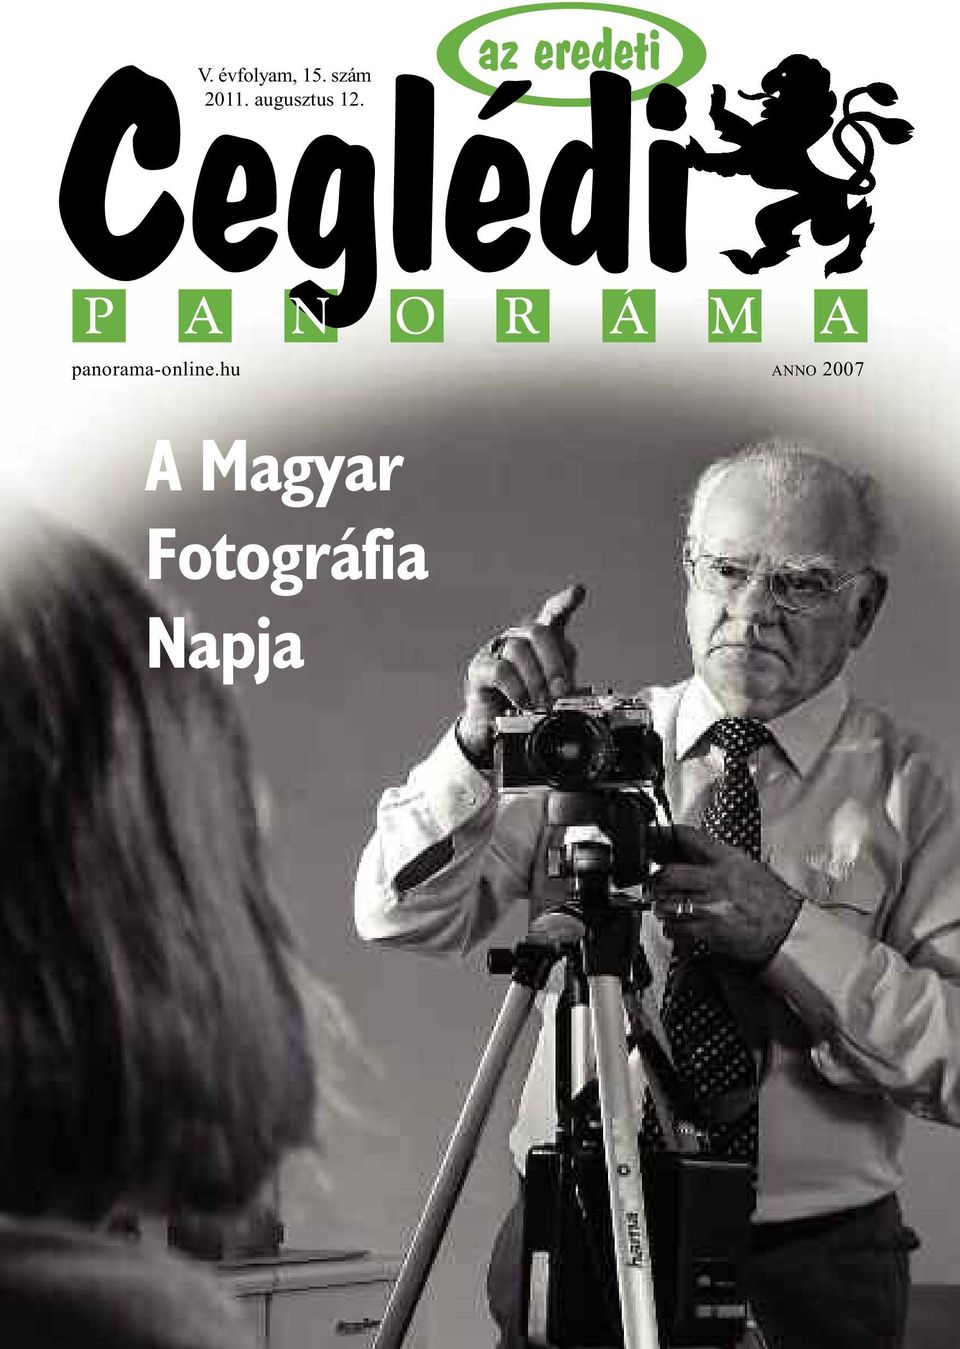 A Magyar Fotográfia Napja az